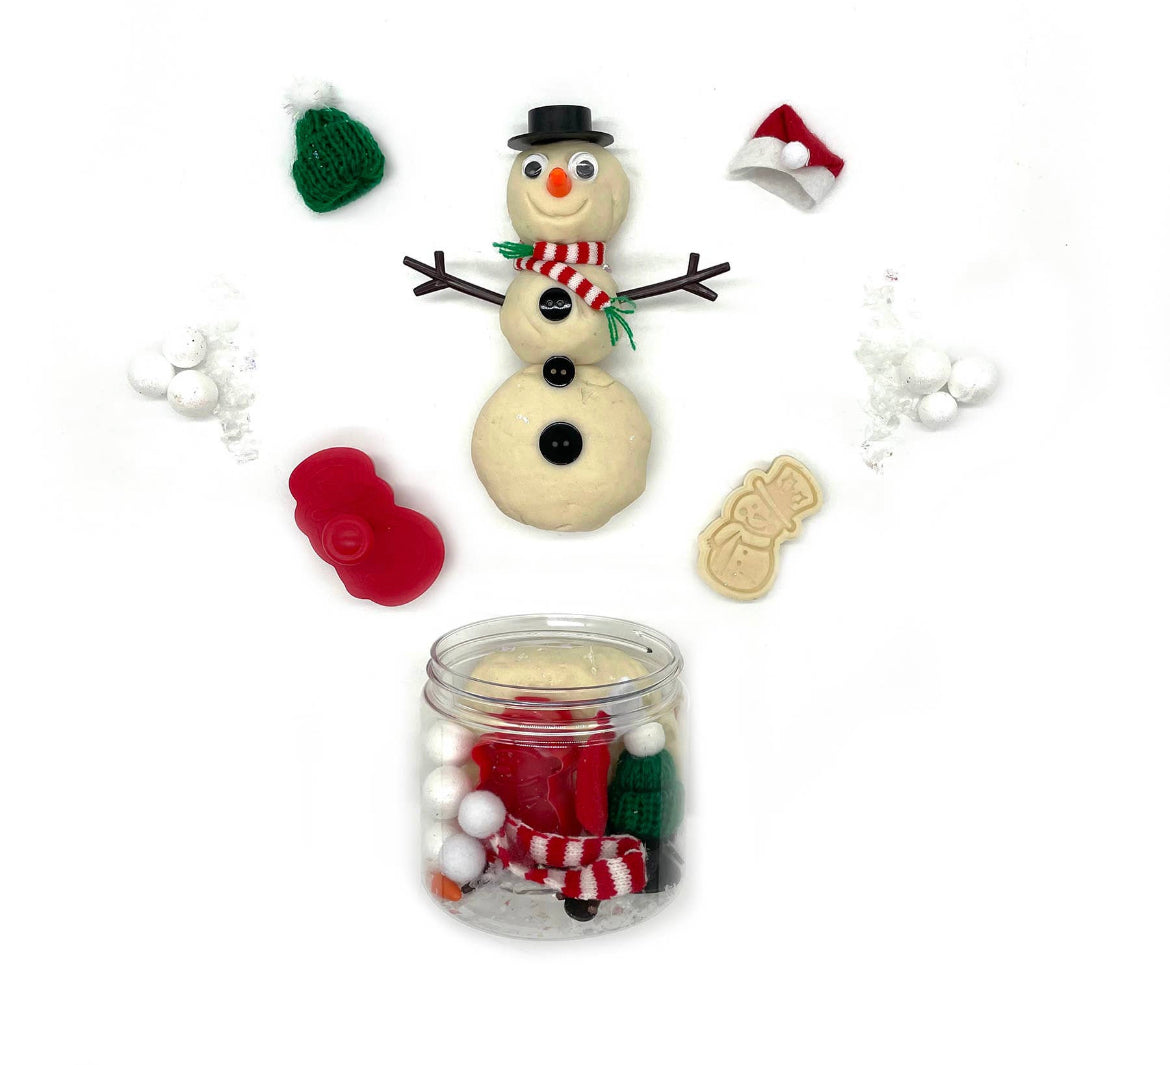 Build a Snowman Play Dough-To-Go Kit